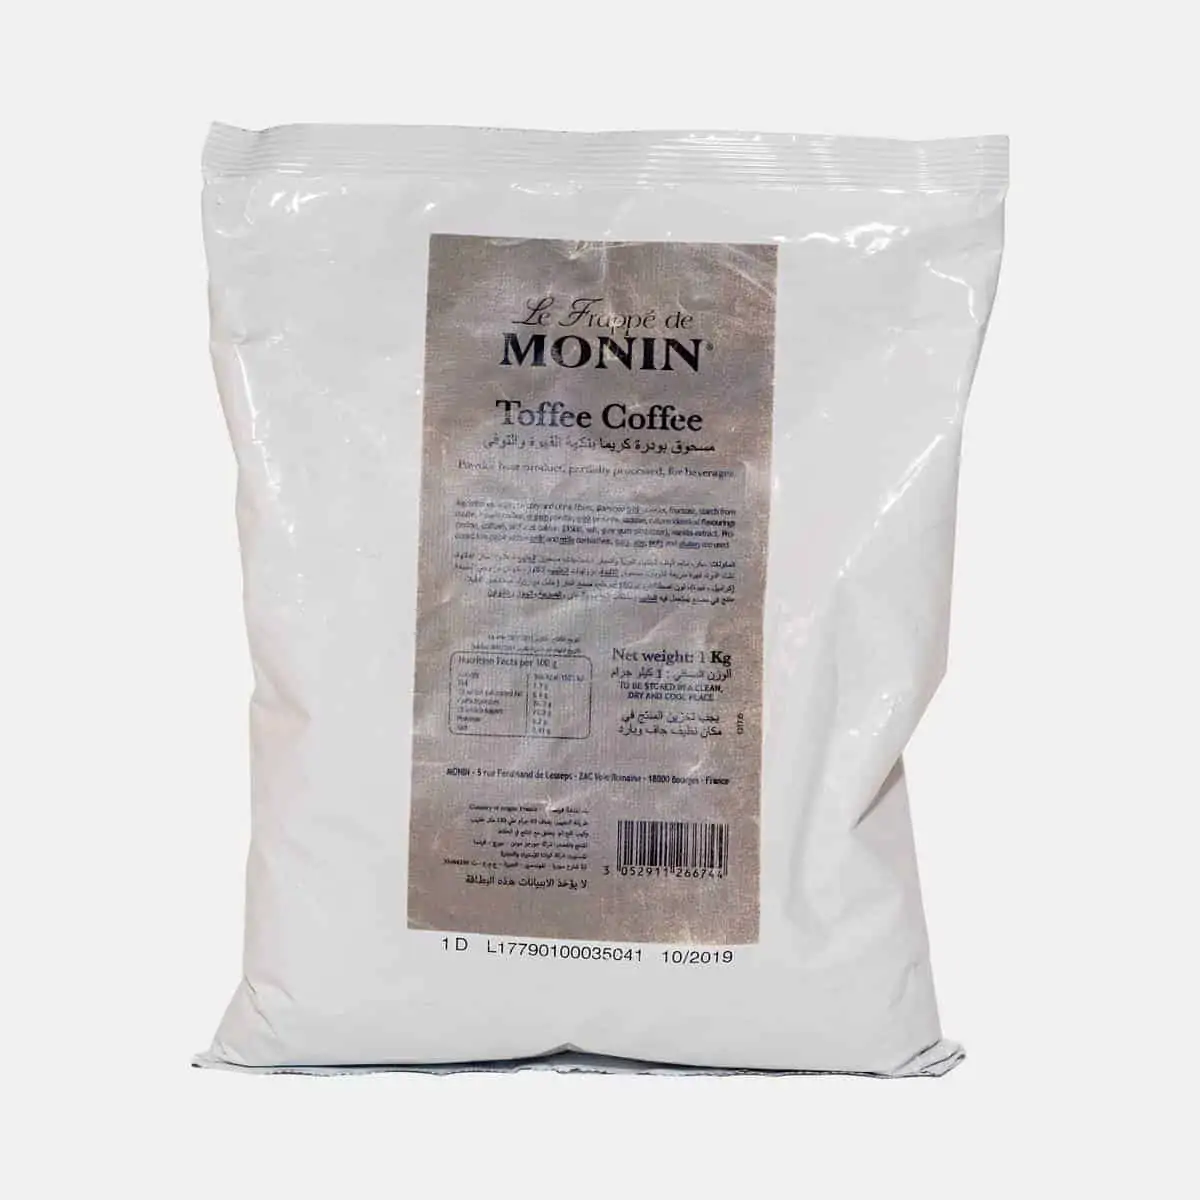 Monin Toffee Coffee Frappe Base Powder Sealed Bag